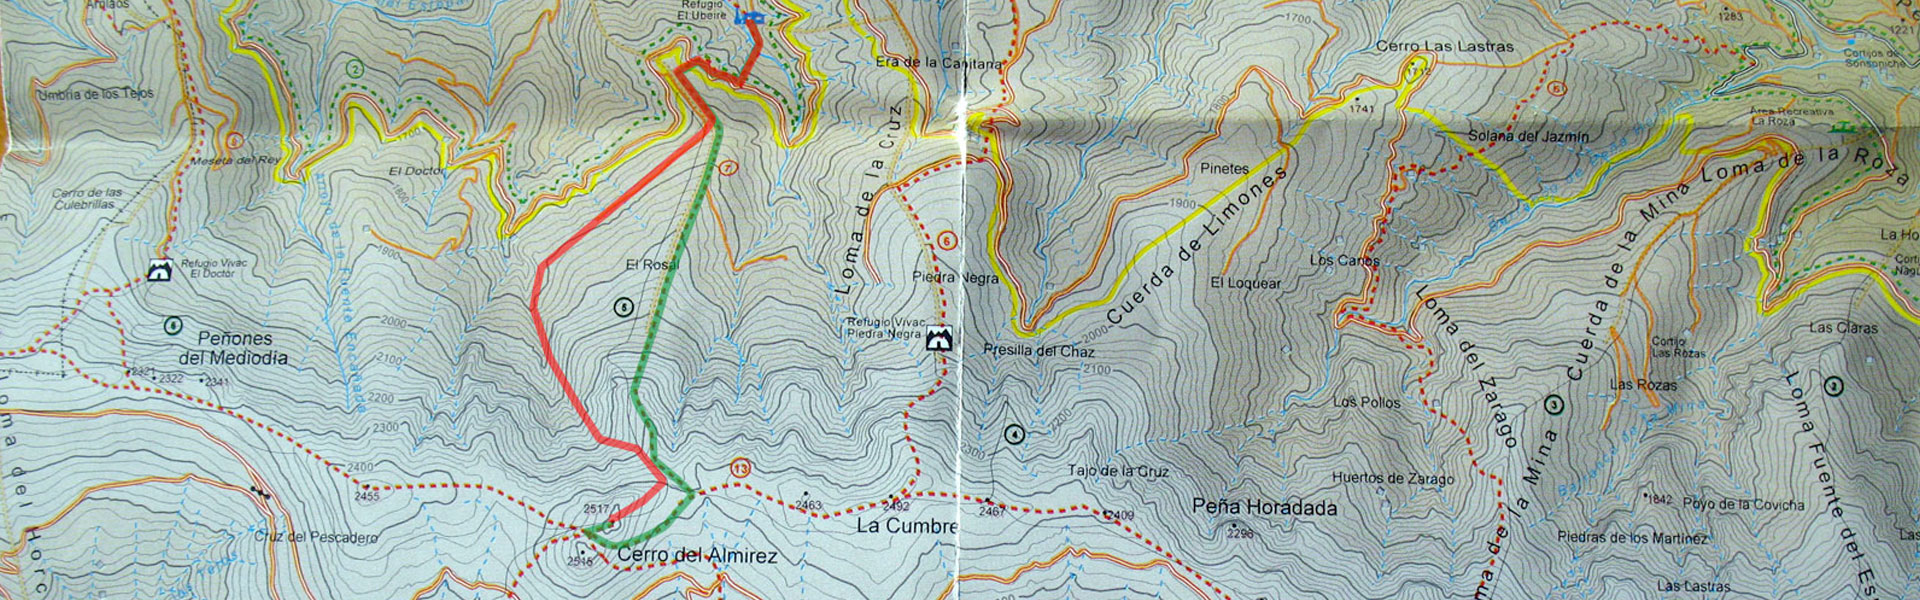 Mapa Cerro del Almirez